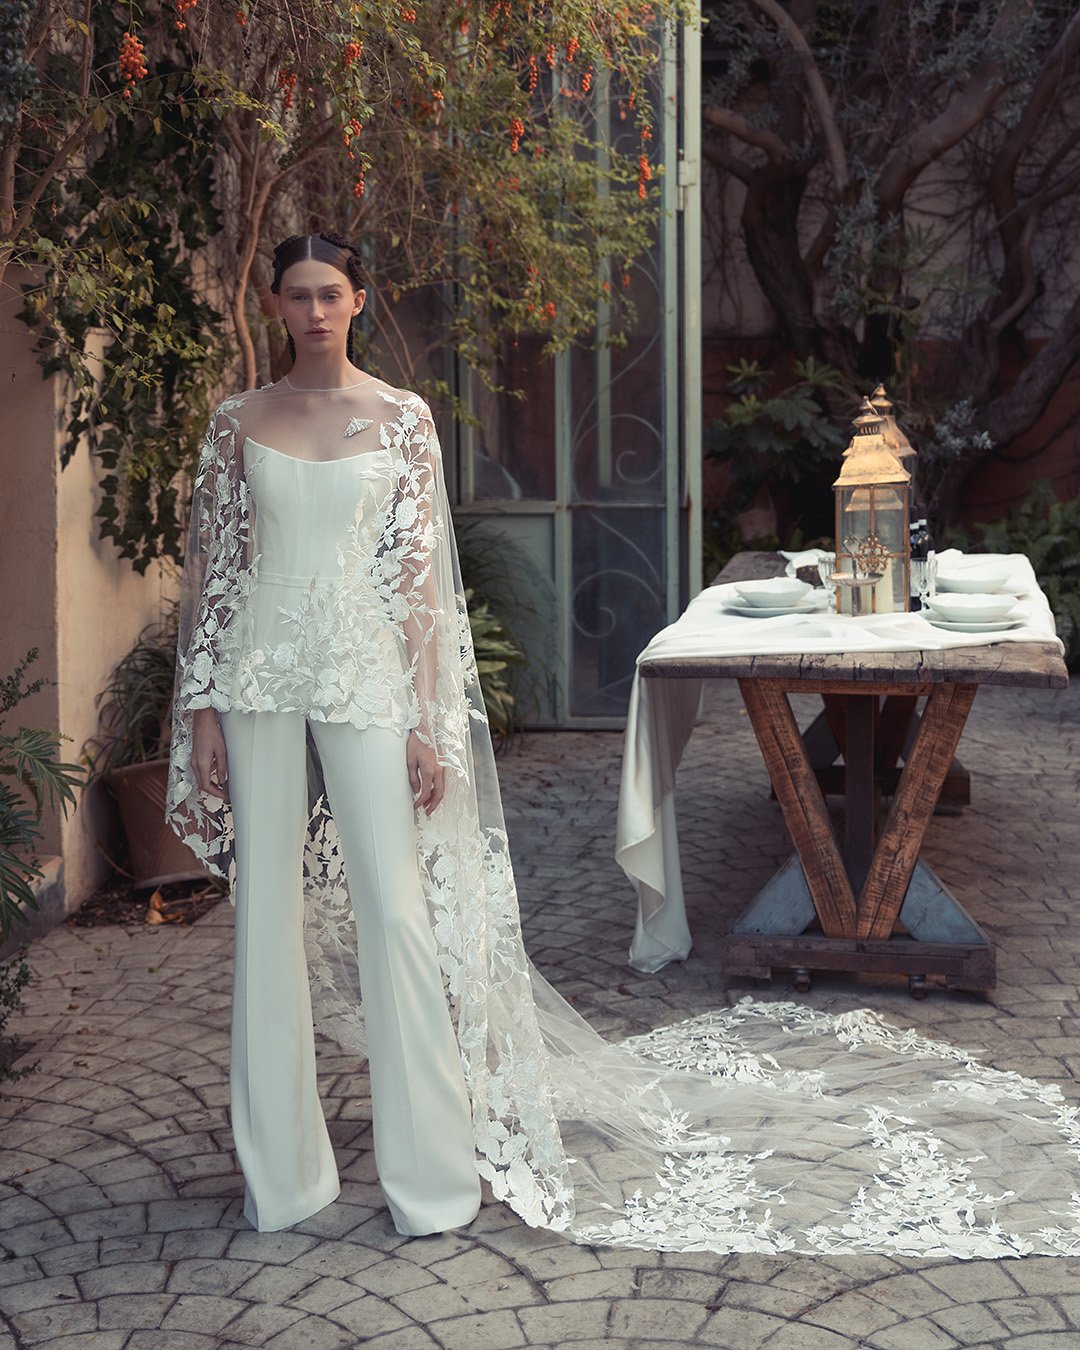 wedding pantsuit ideas white with cape lace kim kassas